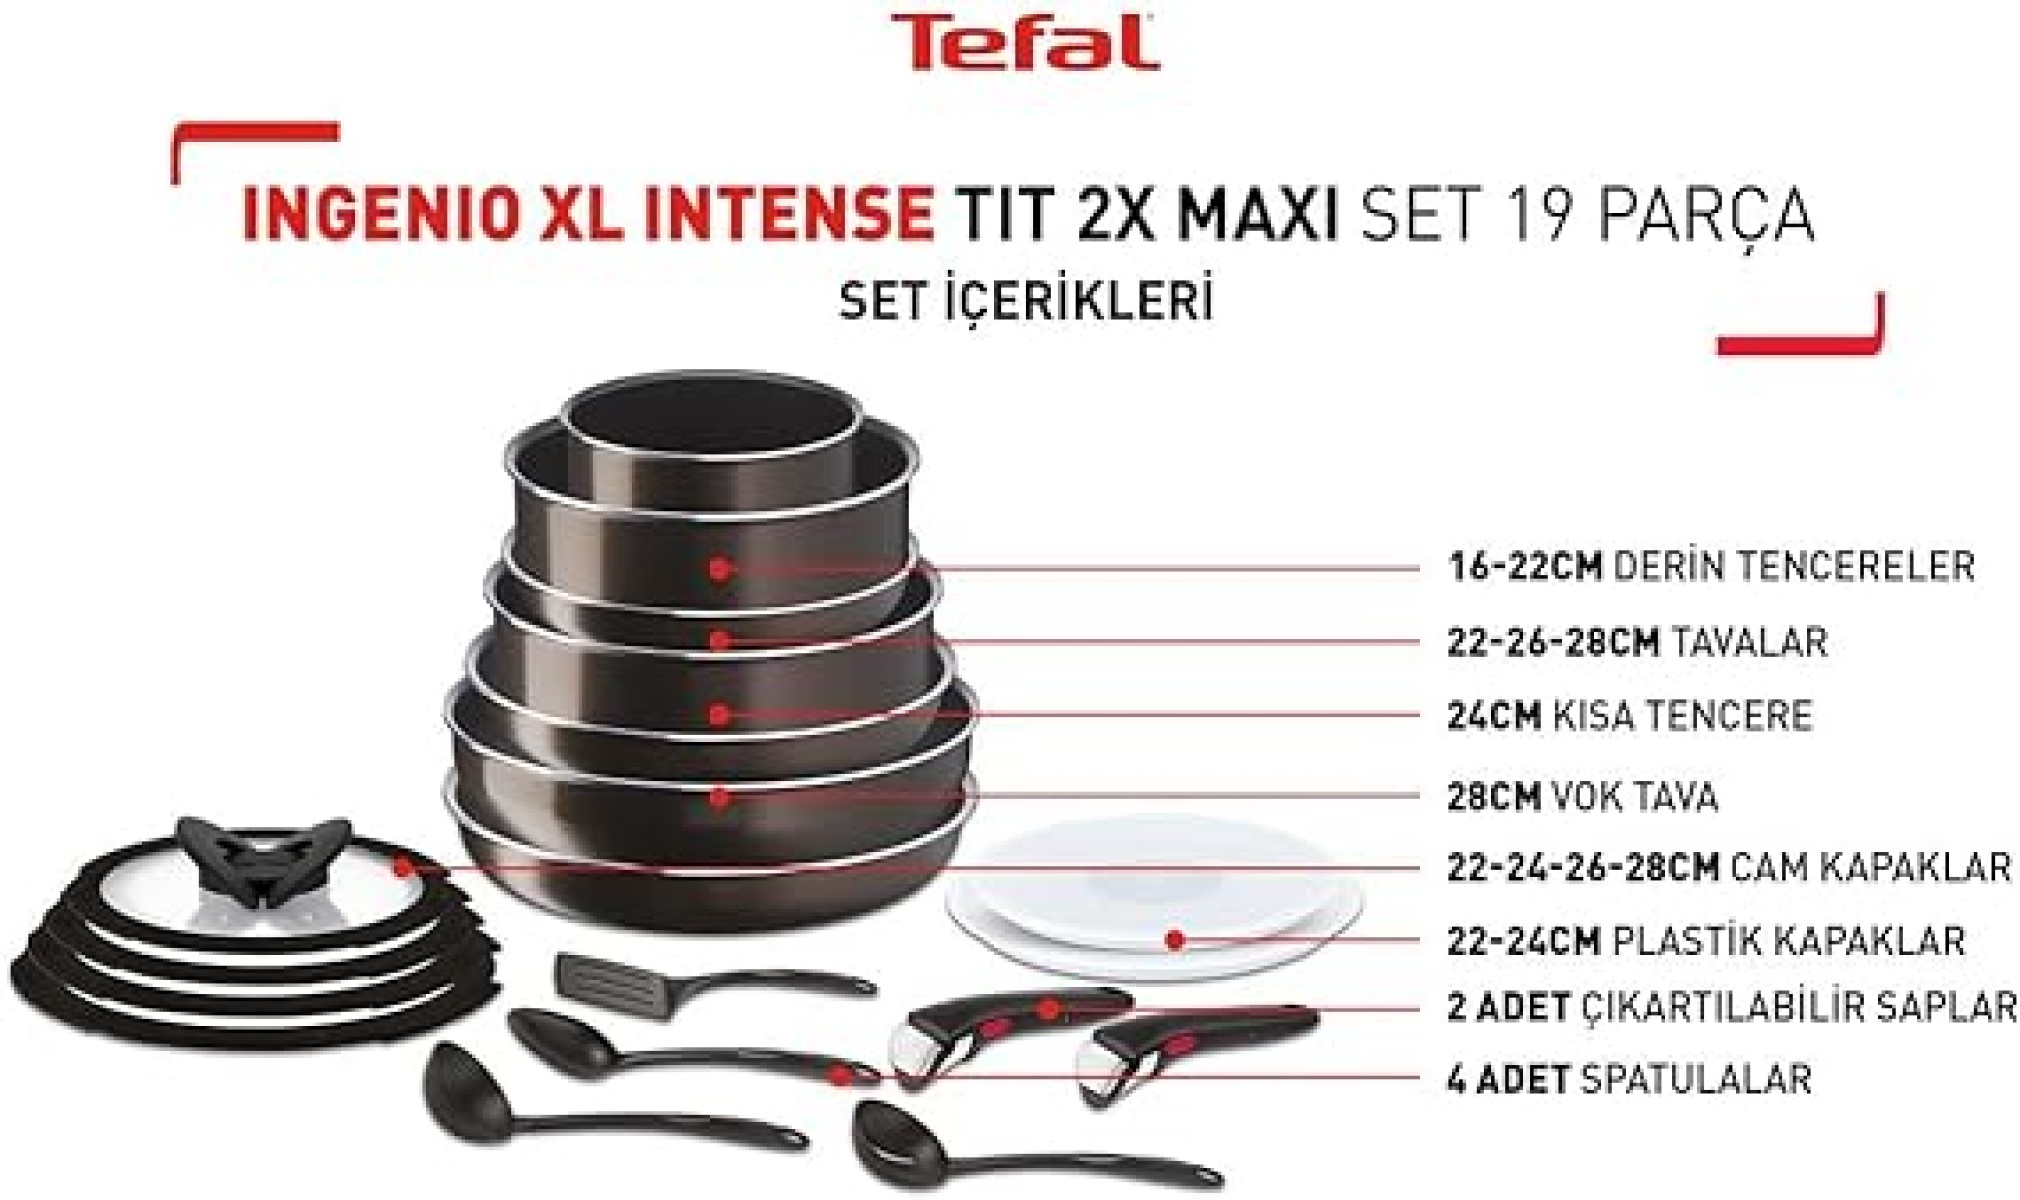 TEFAL Ingenio XL Titanium) Pfanne Beschichtung: Intense (Edelstahl